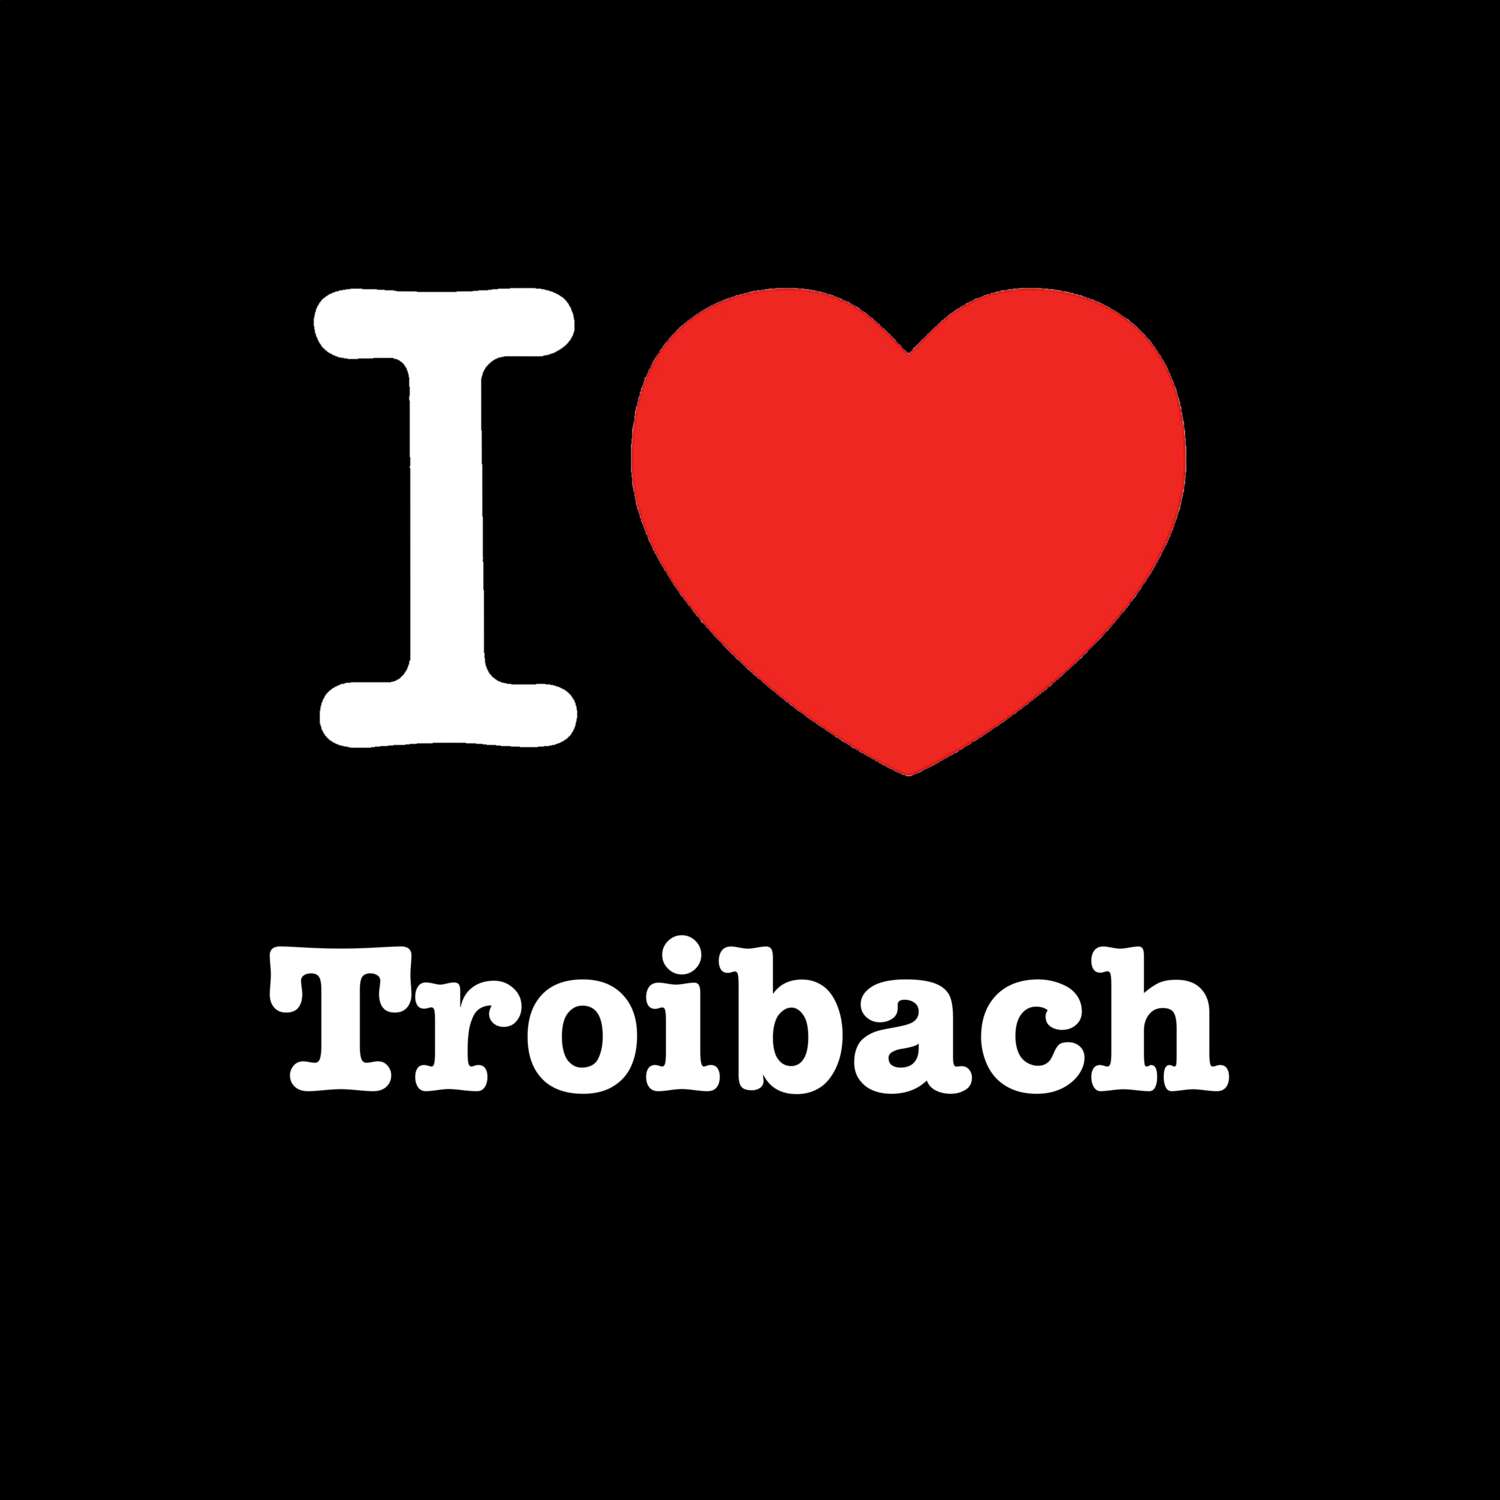 Troibach T-Shirt »I love«